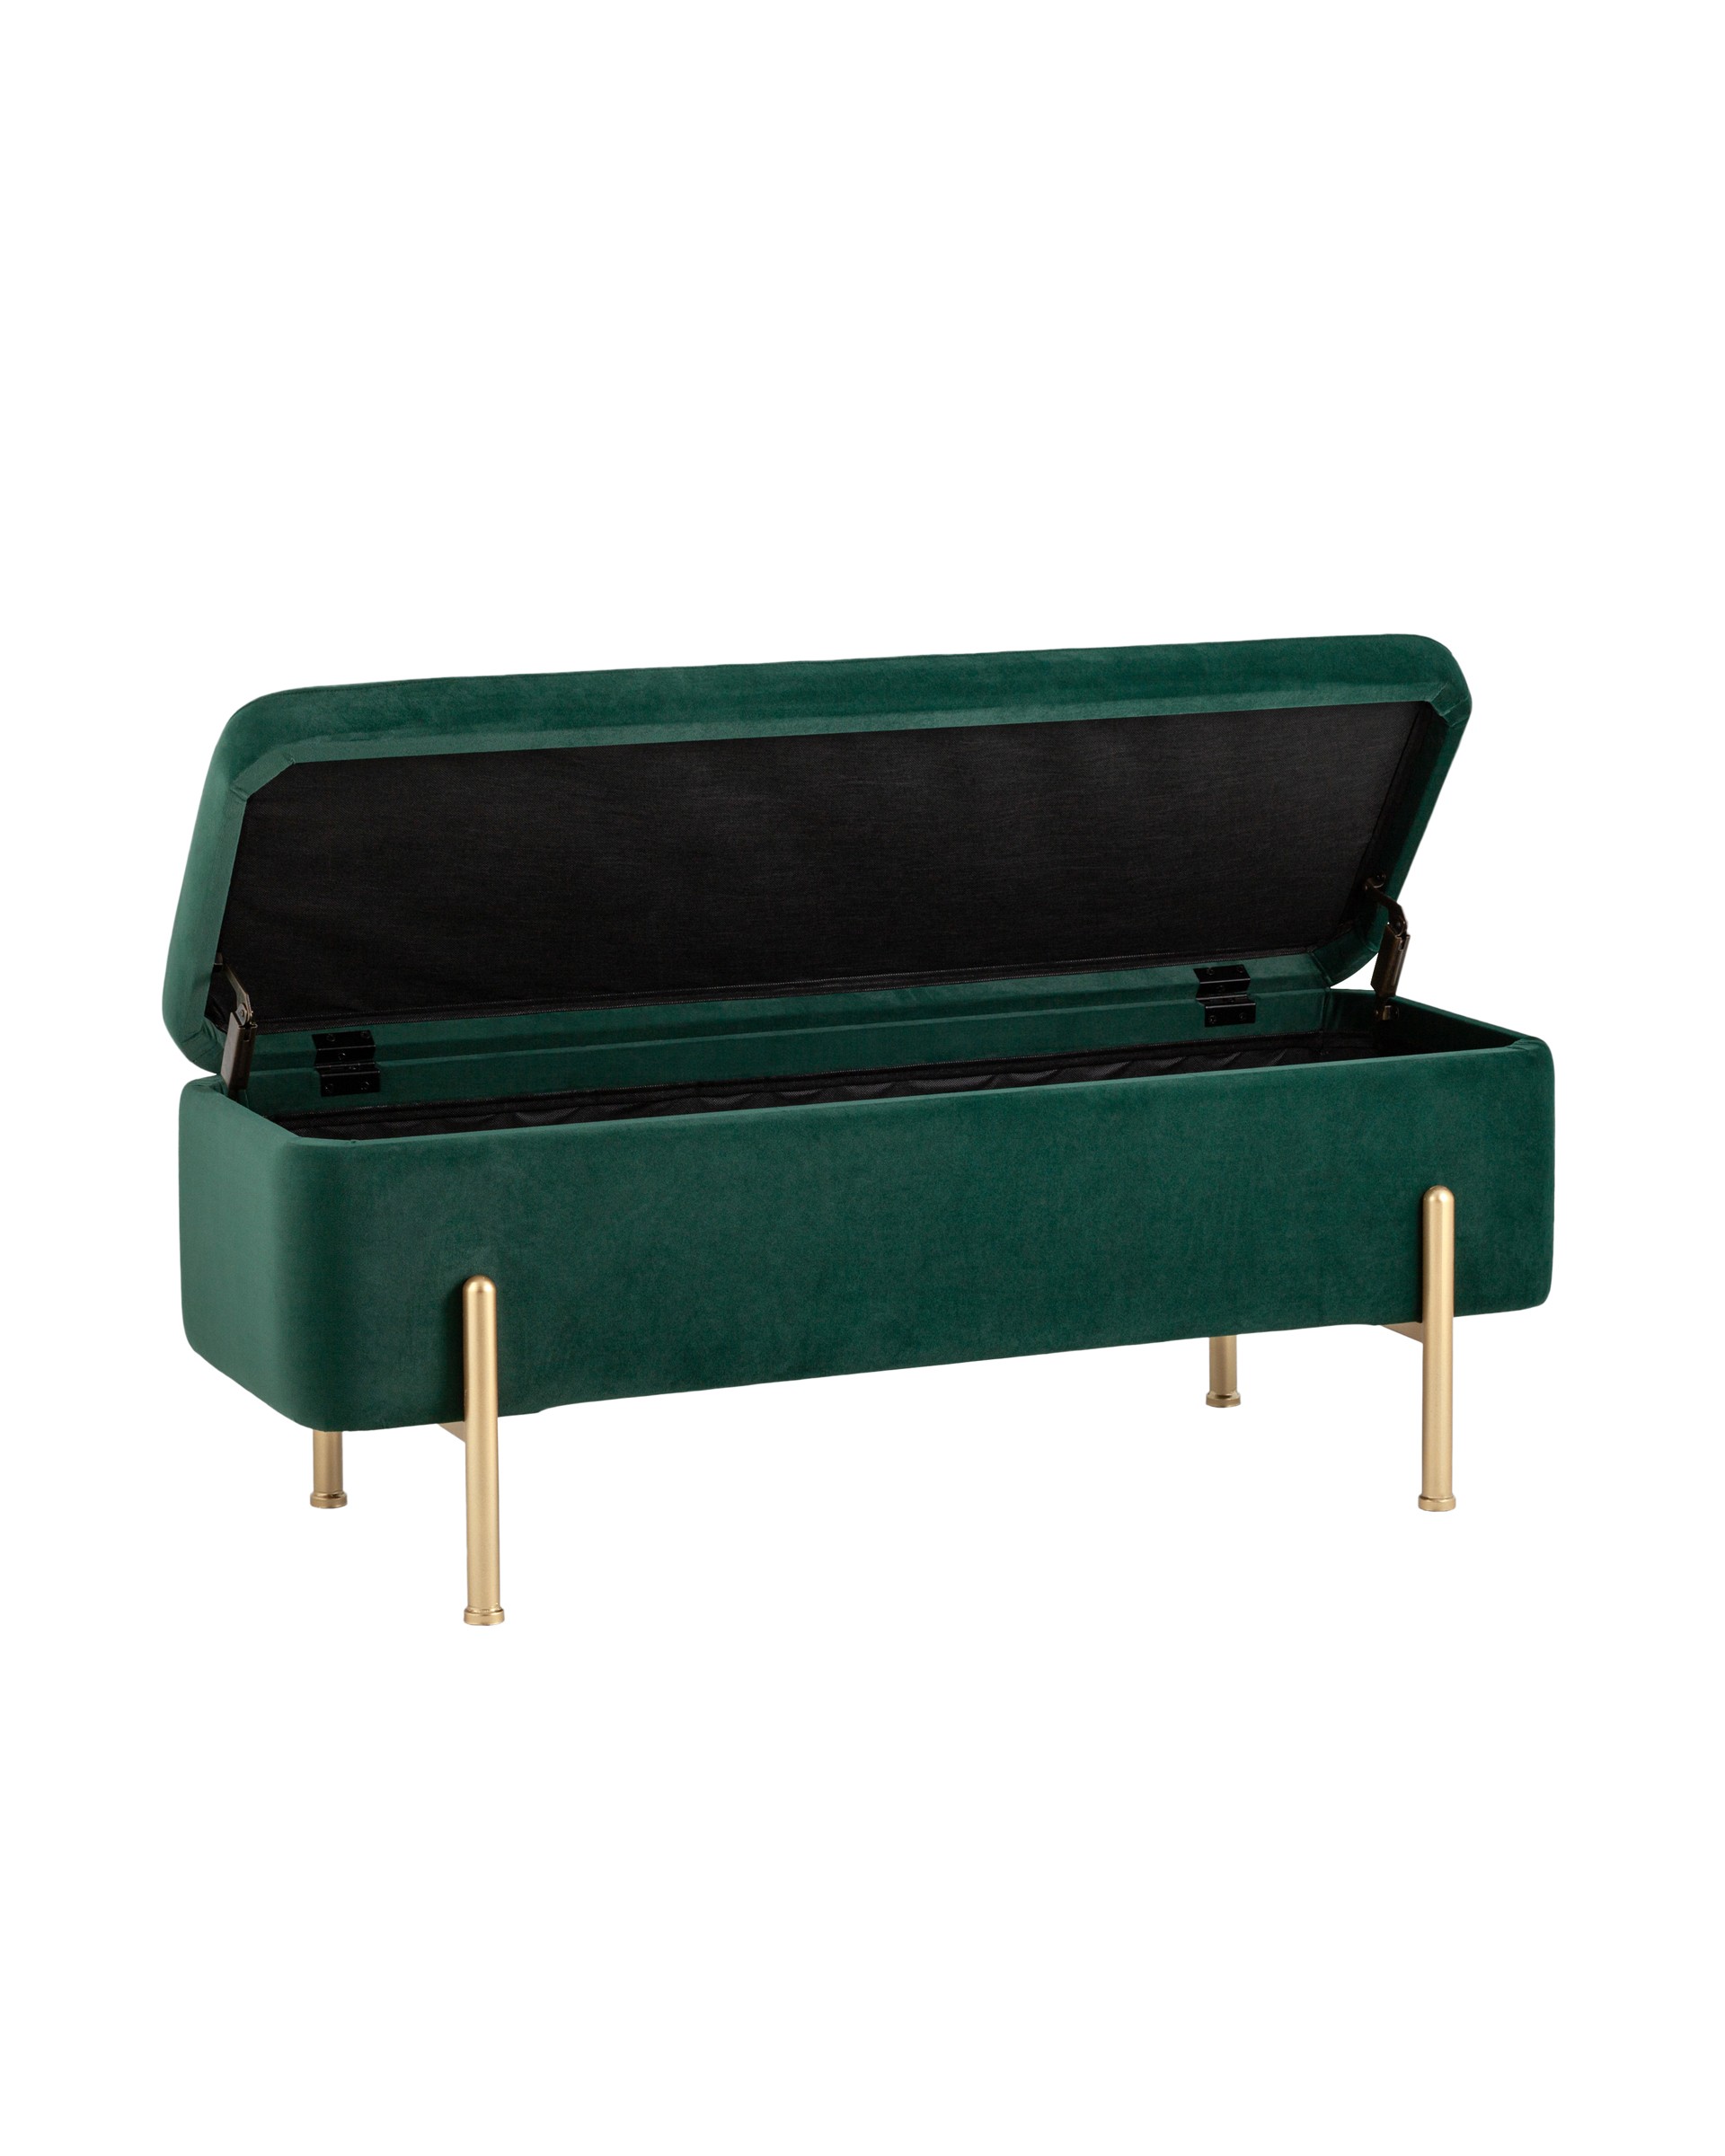 Банкетка Болейн с ящиком велюр зеленый